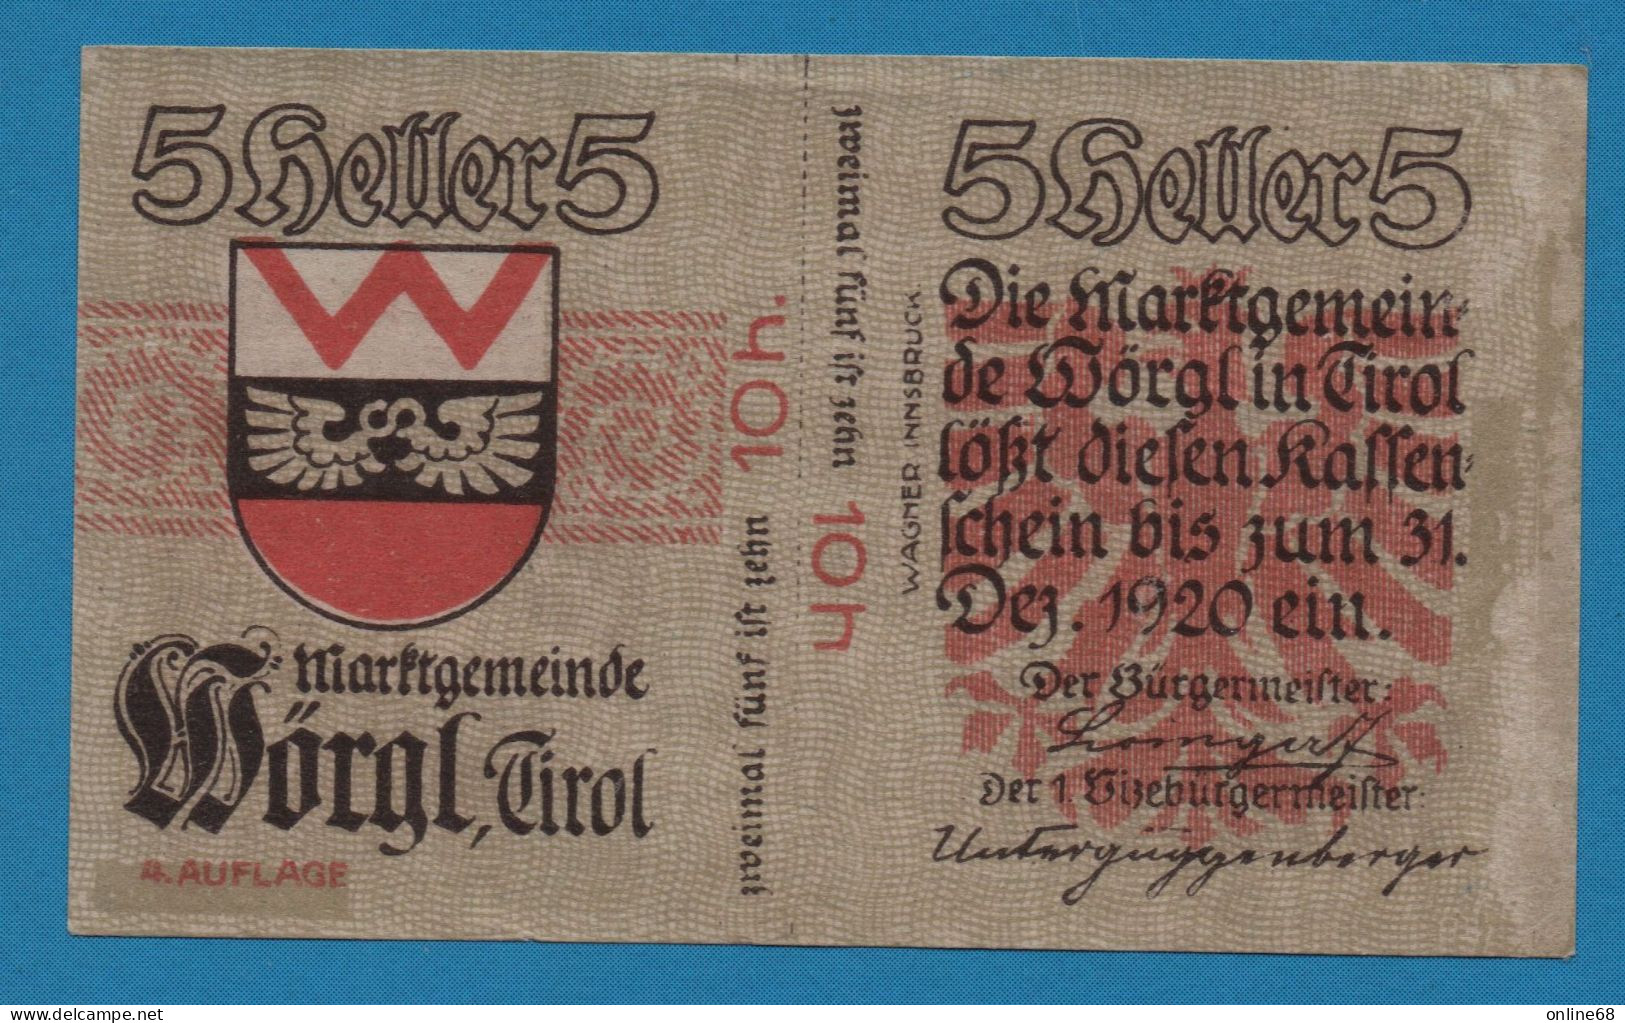 AUSTRIA Wörgl Tirol Marktgemeinde 10 HELLER No Date-31/12/1920 4. AUFLAGE NOTGELD Catalog # FS 1252 - Oesterreich